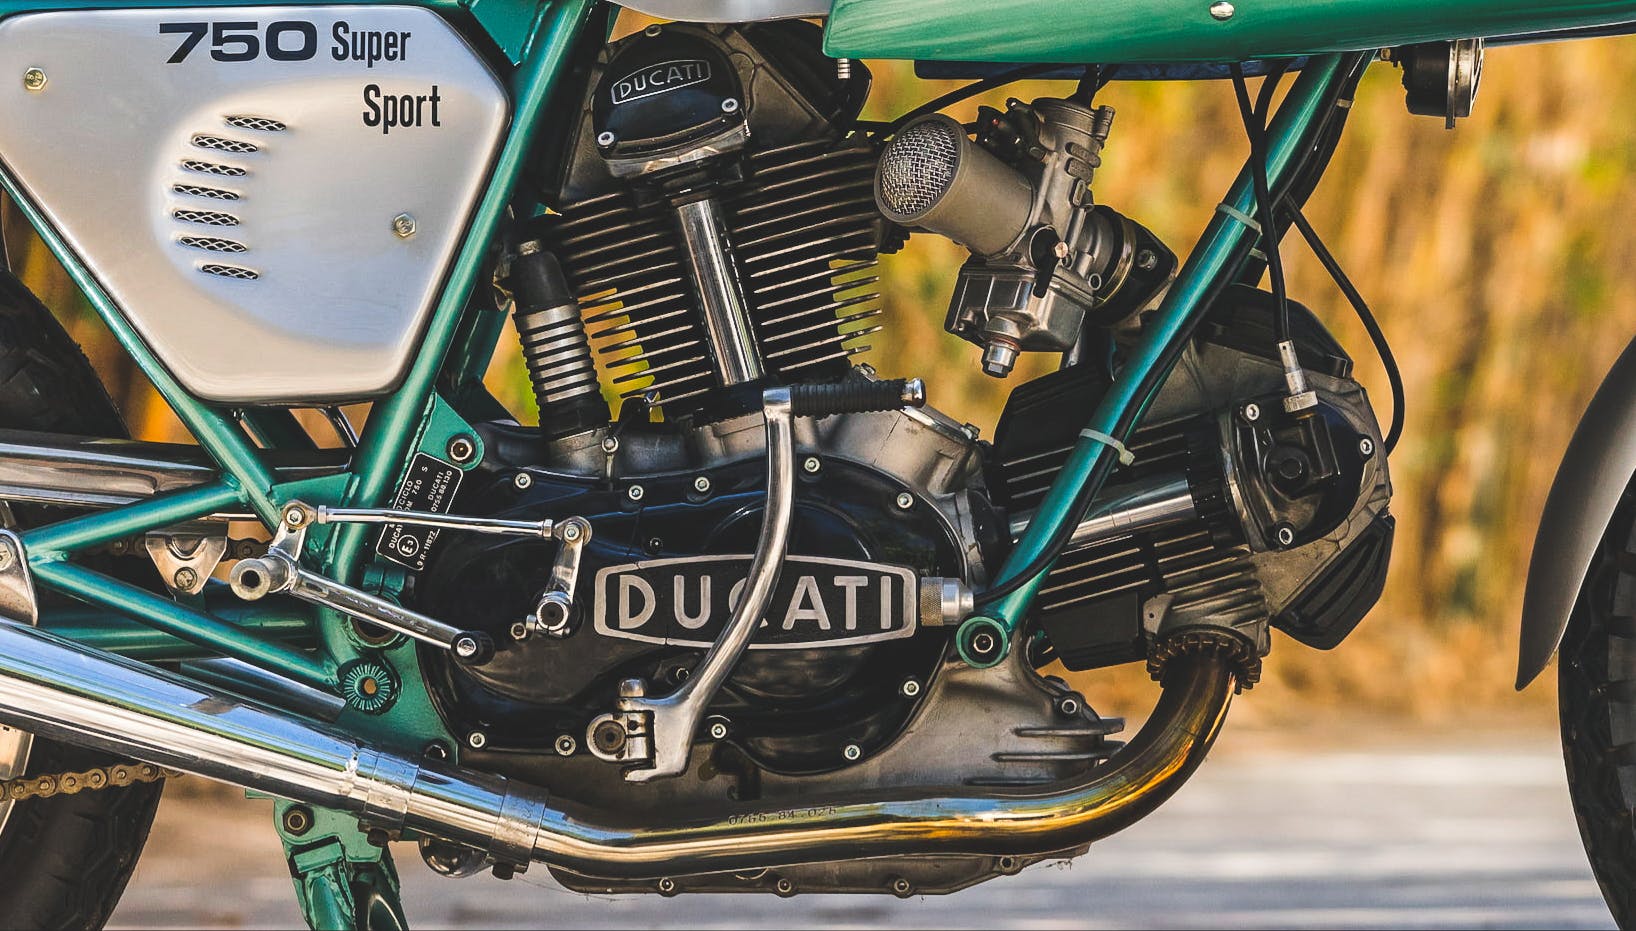 Ducati vintage motorcycle engine